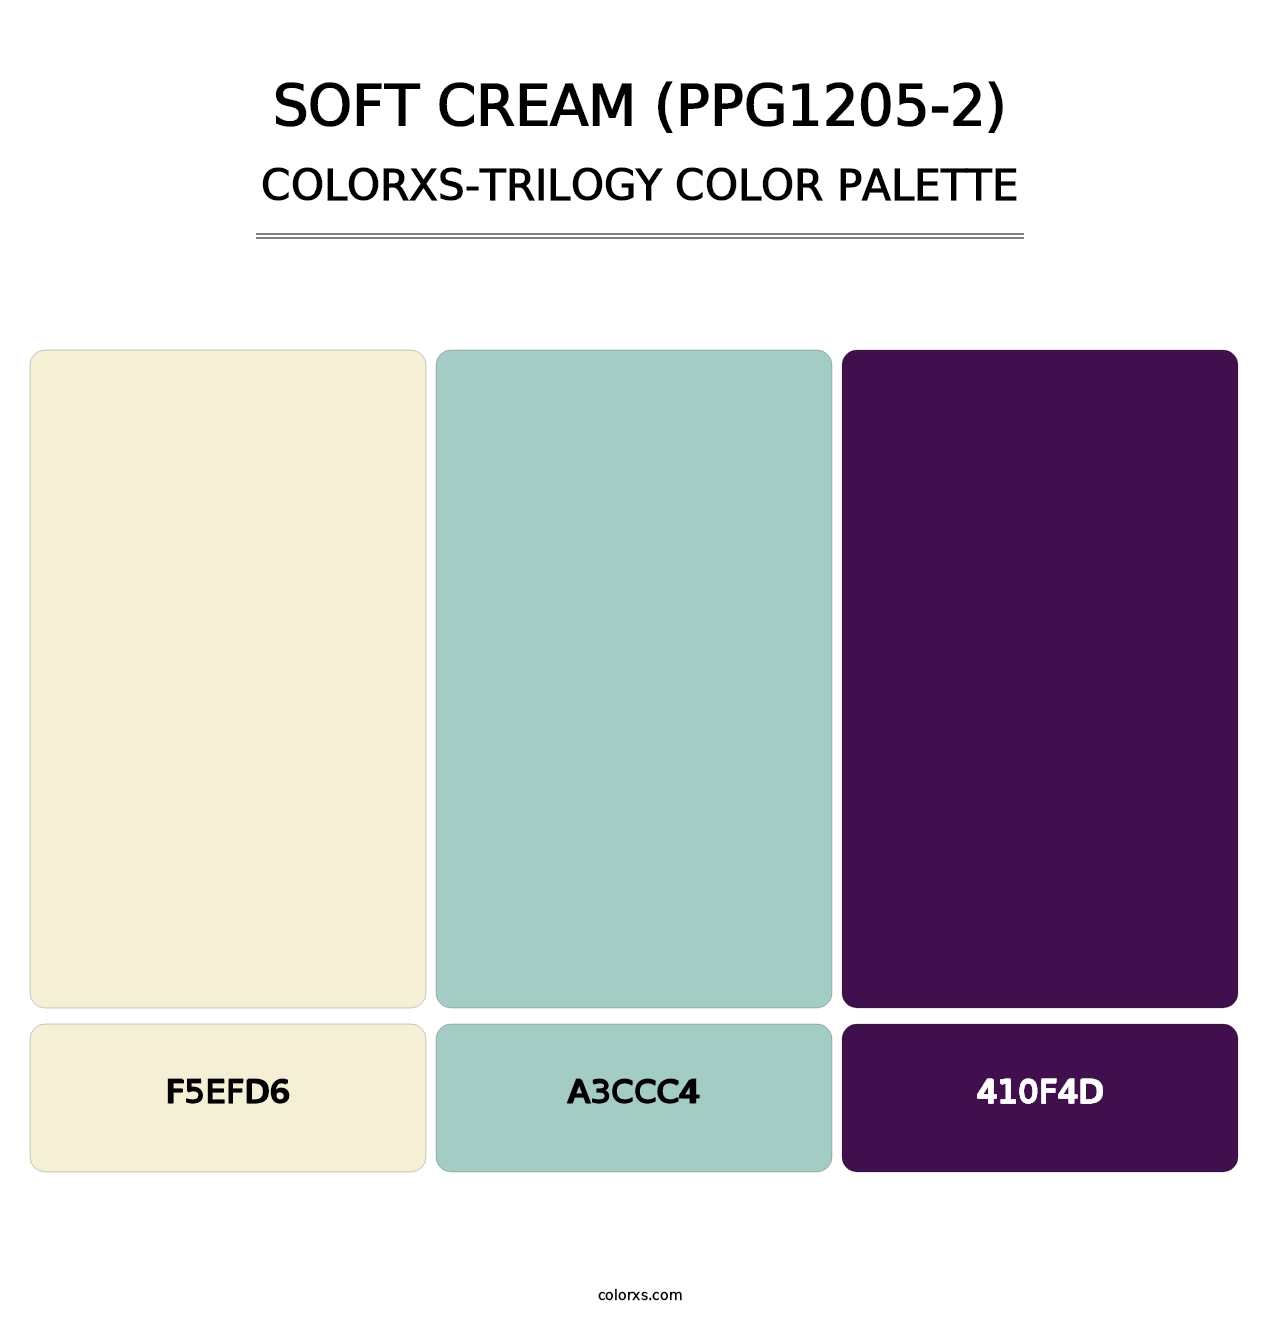 Soft Cream (PPG1205-2) - Colorxs Trilogy Palette